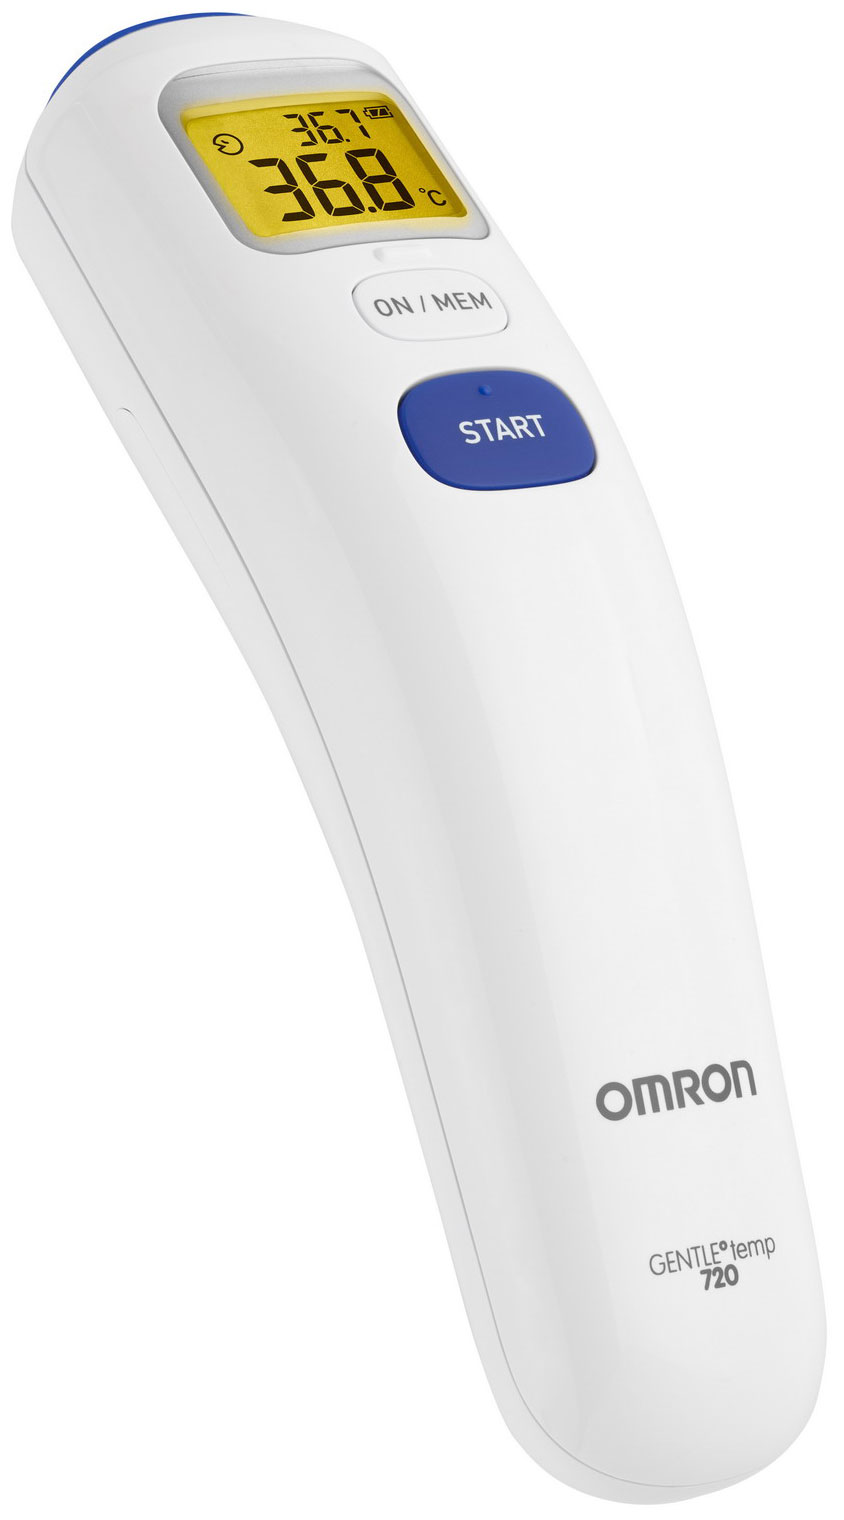 Бесконтактный инфракрасный термометр OMRON Gentle Temp 720 (MC-720-E) термометр электронный omron gentle temp 720 mc 720 e инфракрасный память звуковой сигнал белый